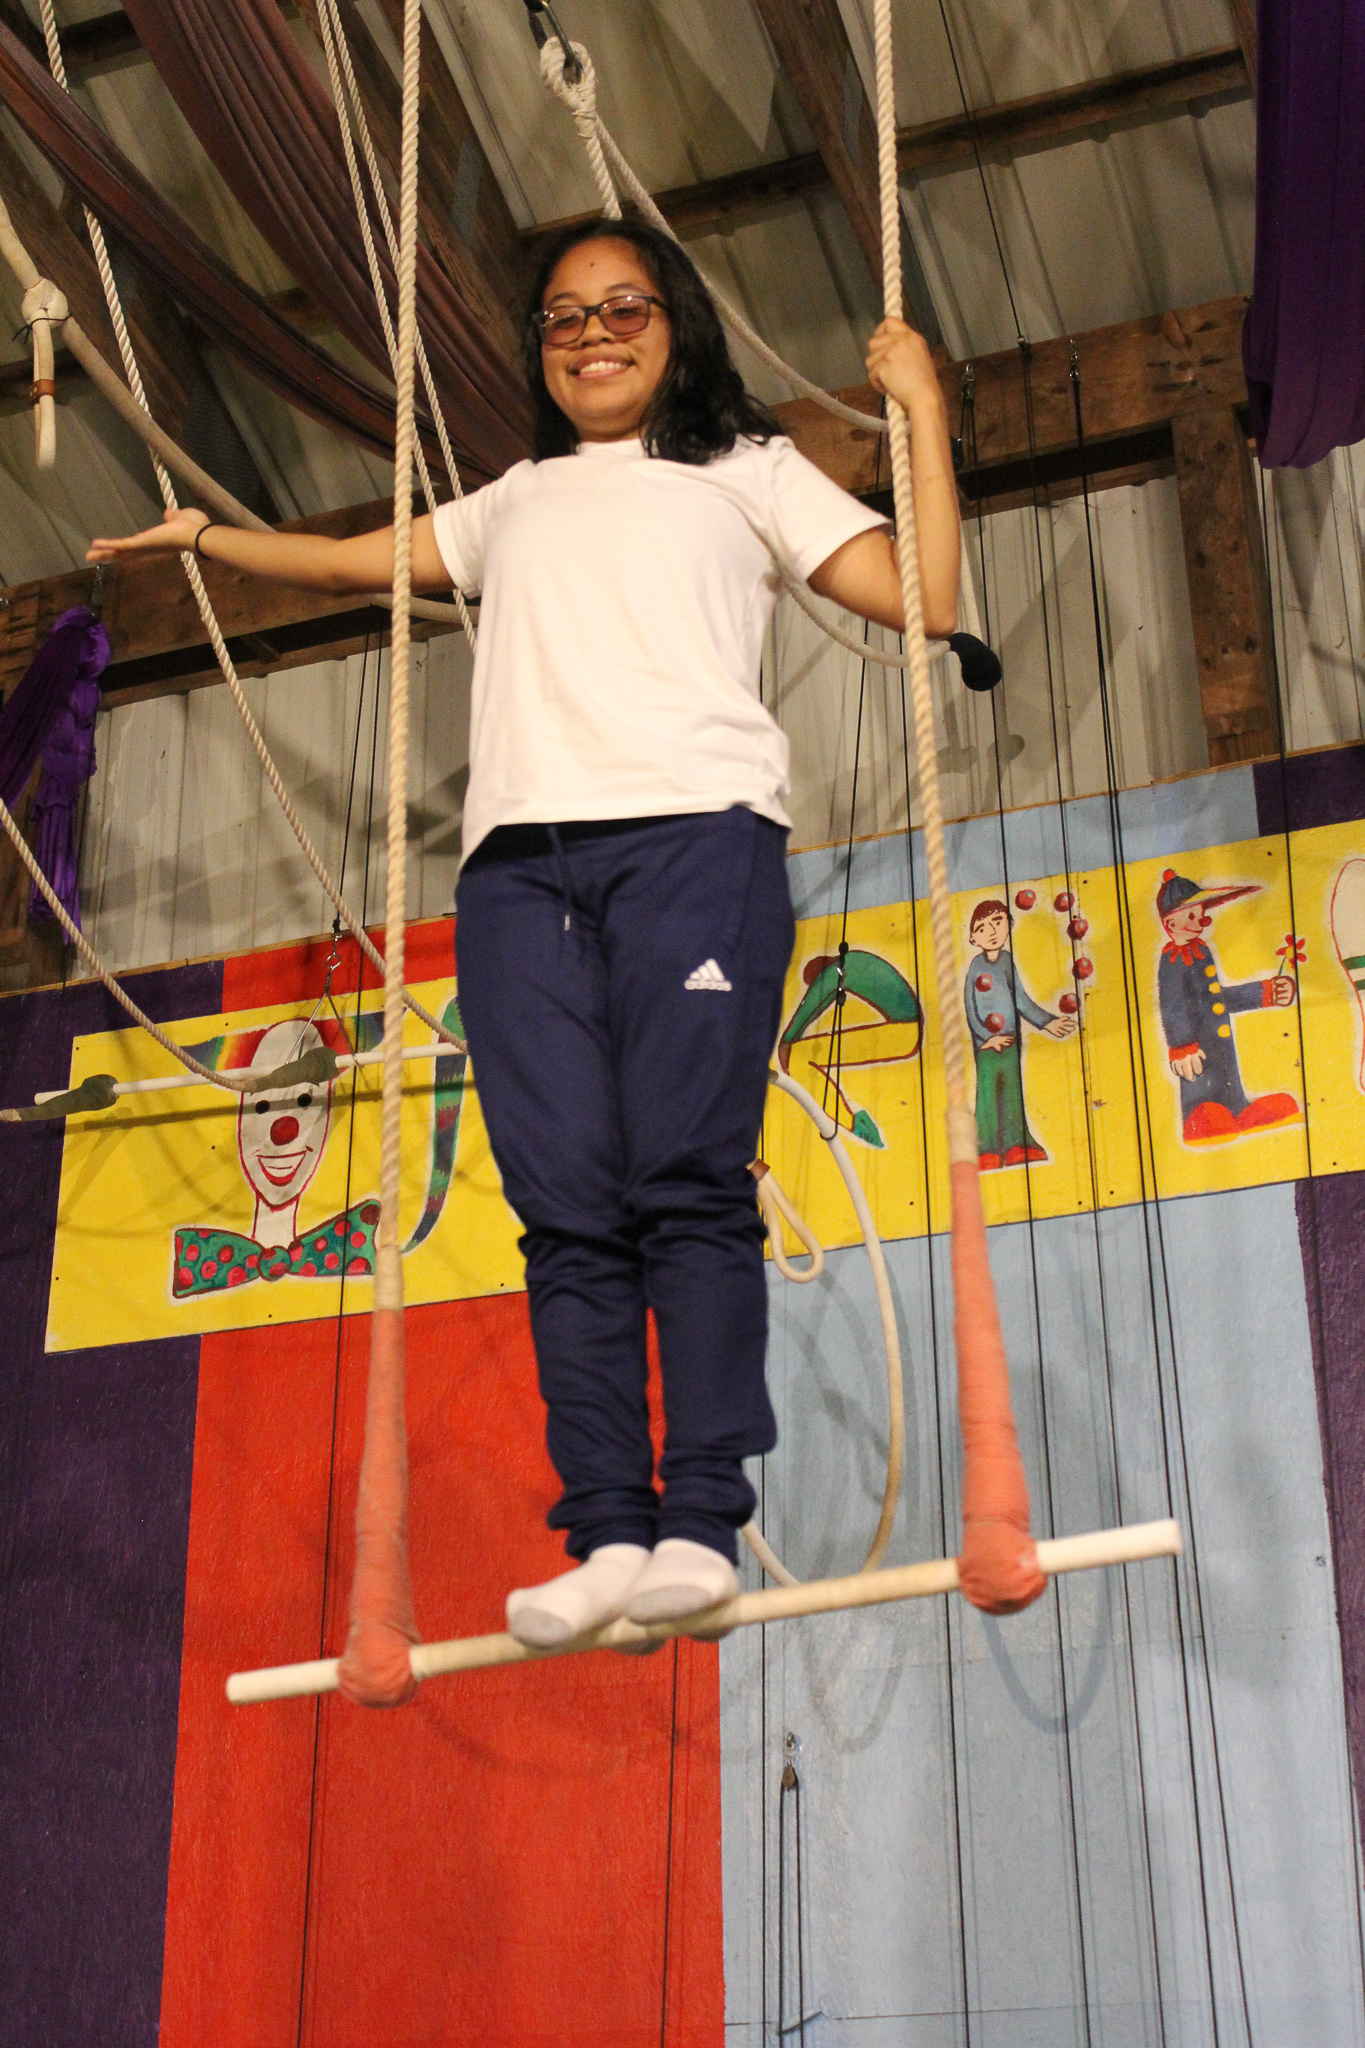 Camper on a trapeze